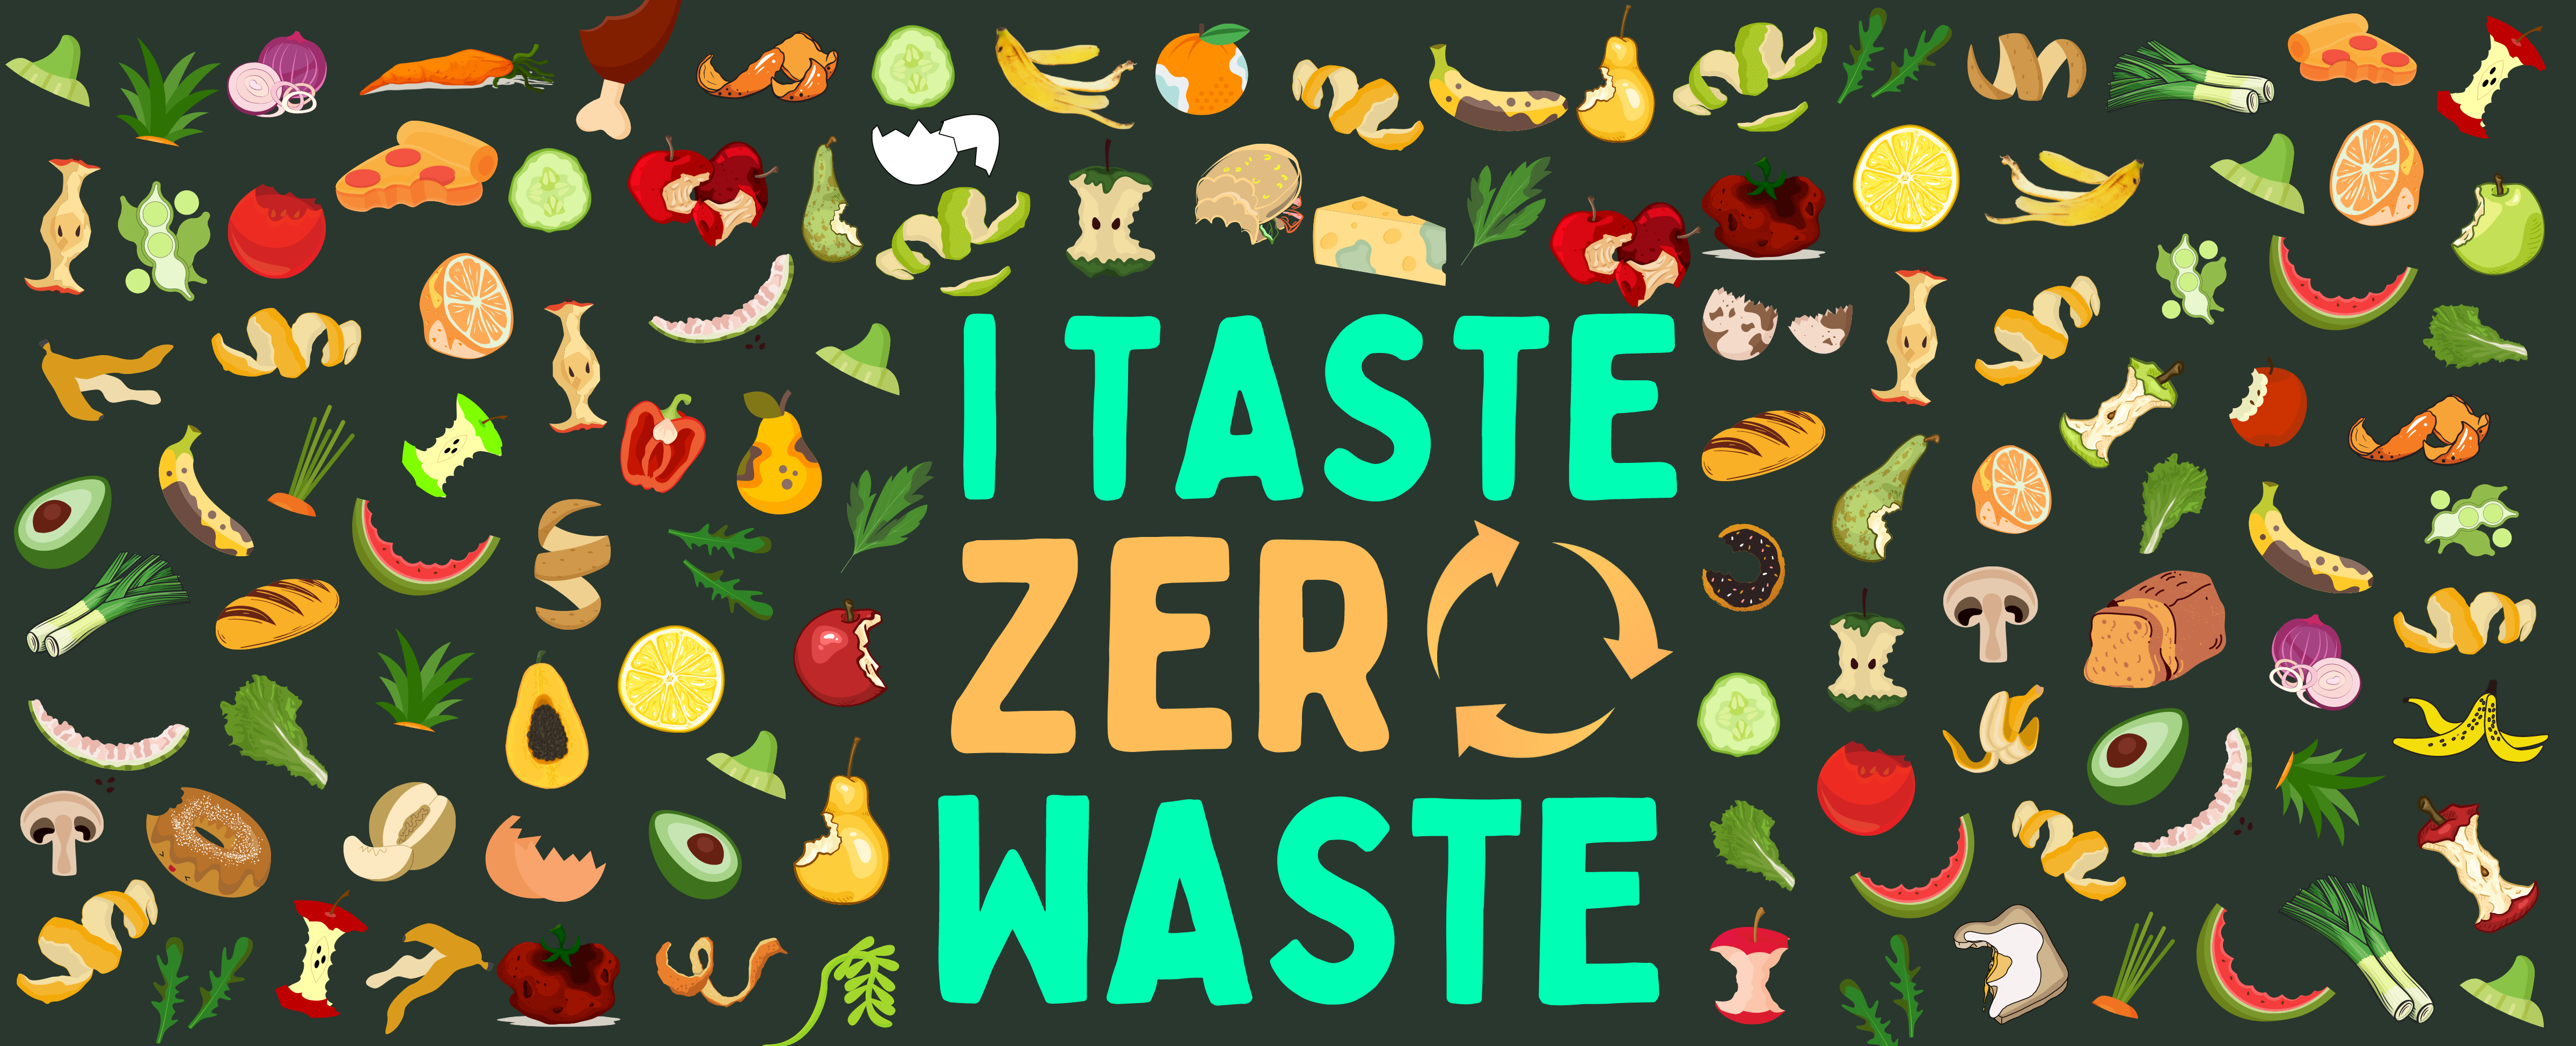 i taste zero waste